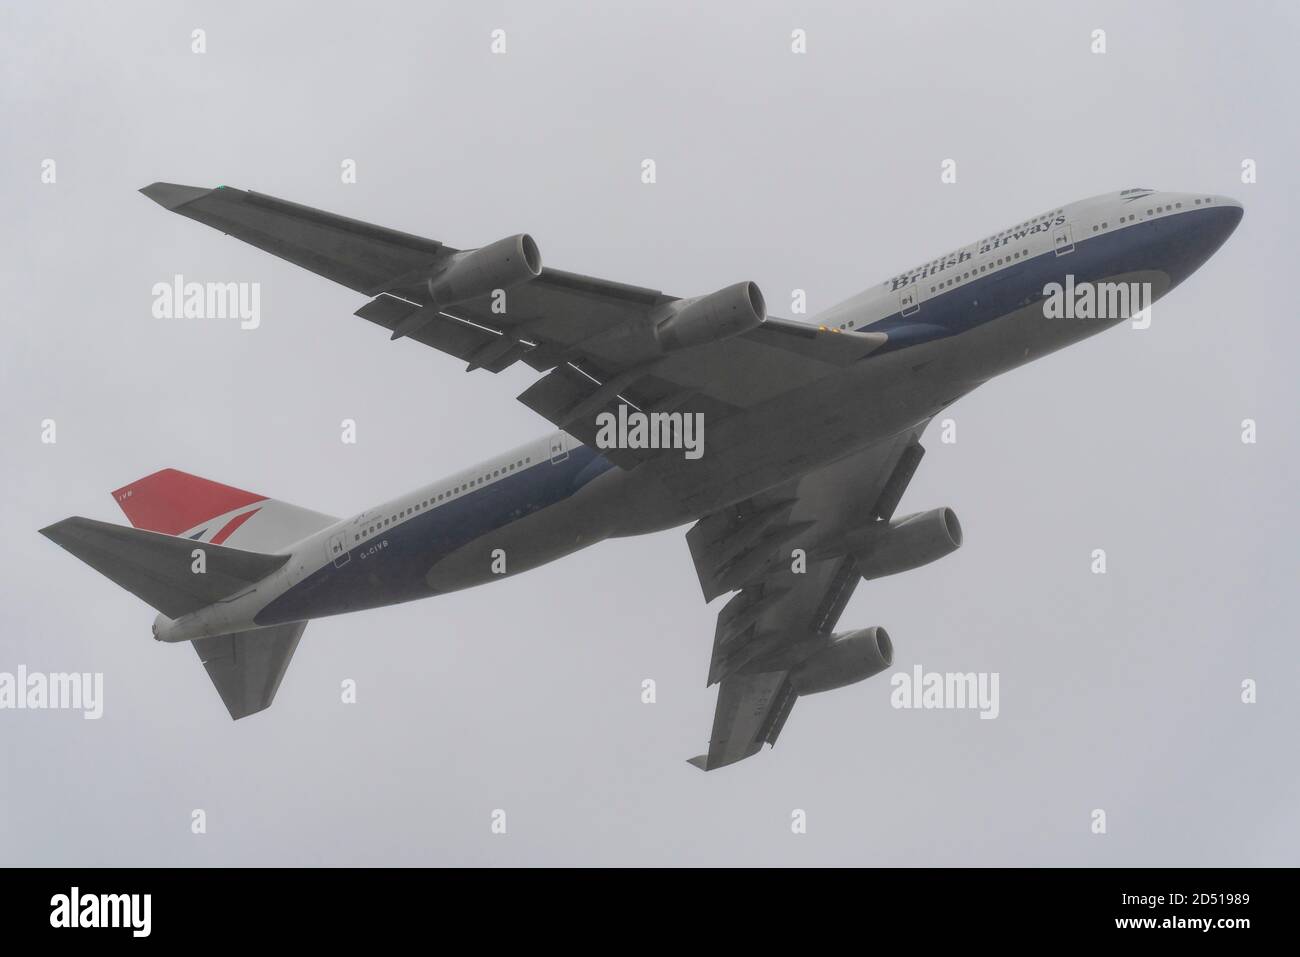 Giornata di addio per British Airways Boeing 747 aerei Jumbo Jet Airliner dopo la crisi del viaggio COVID-19. Decollo dello schema retrò centenario G-CIVB Foto Stock